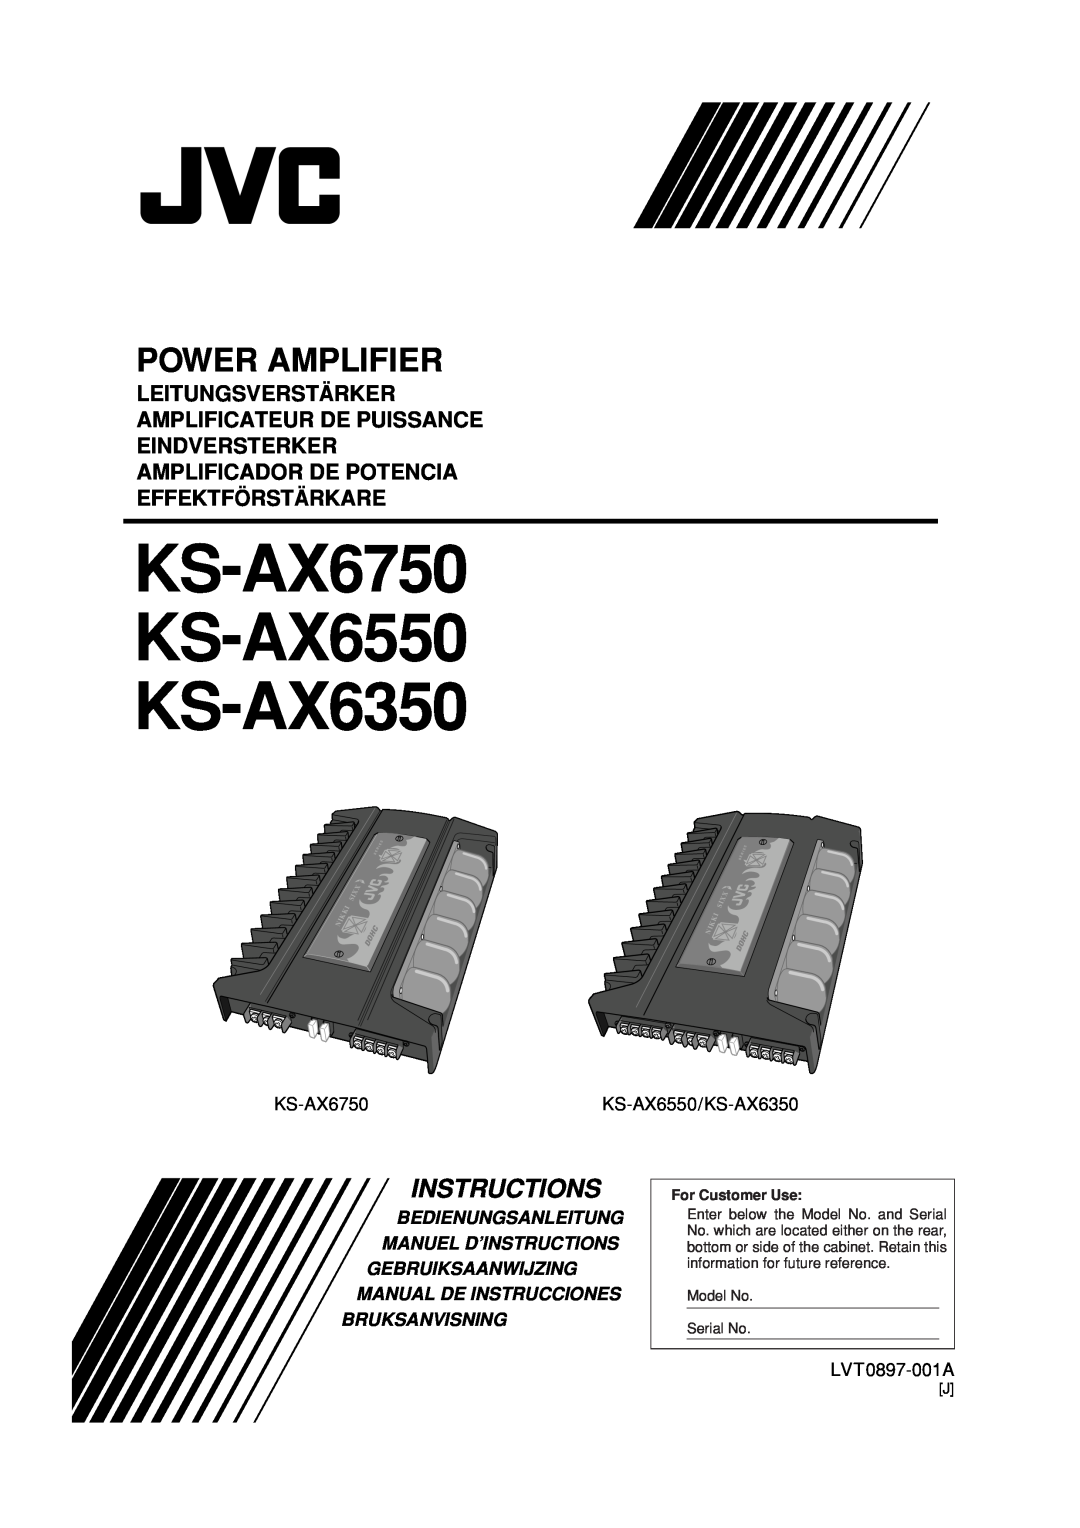 JVC manual KS-AX6550/KS-AX6350, LVT0897-001A, KS-AX6750 KS-AX6550 KS-AX6350, Power Amplifier, Instructions, Dohc 